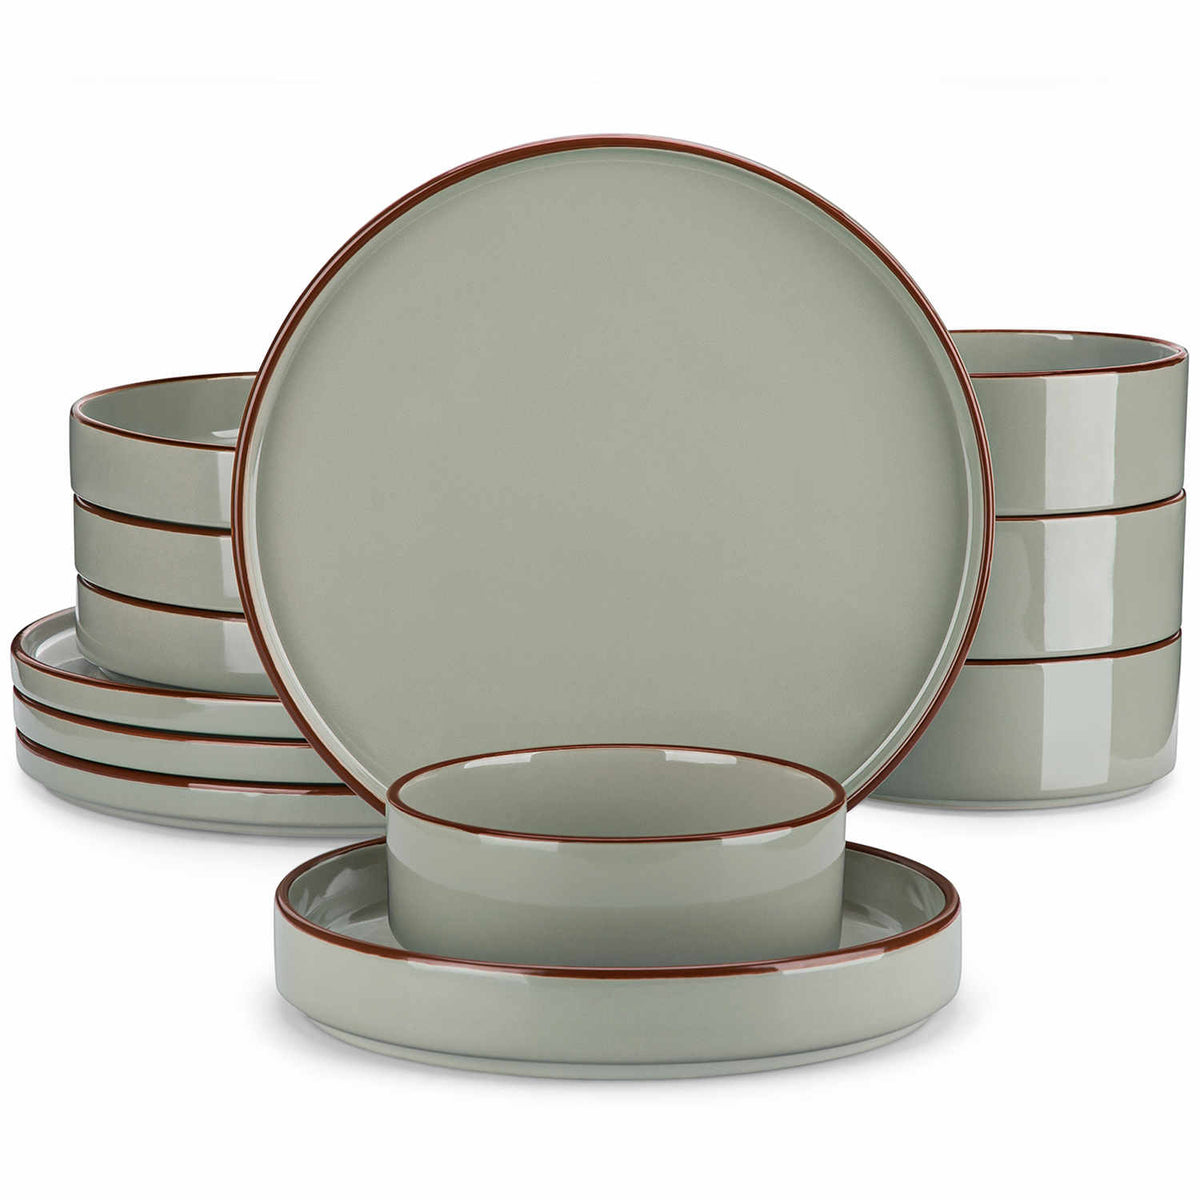 Modern Venus Glossy Green 12 Piece Stoneware Dinnerware Set with Brown Trims-vanacasso